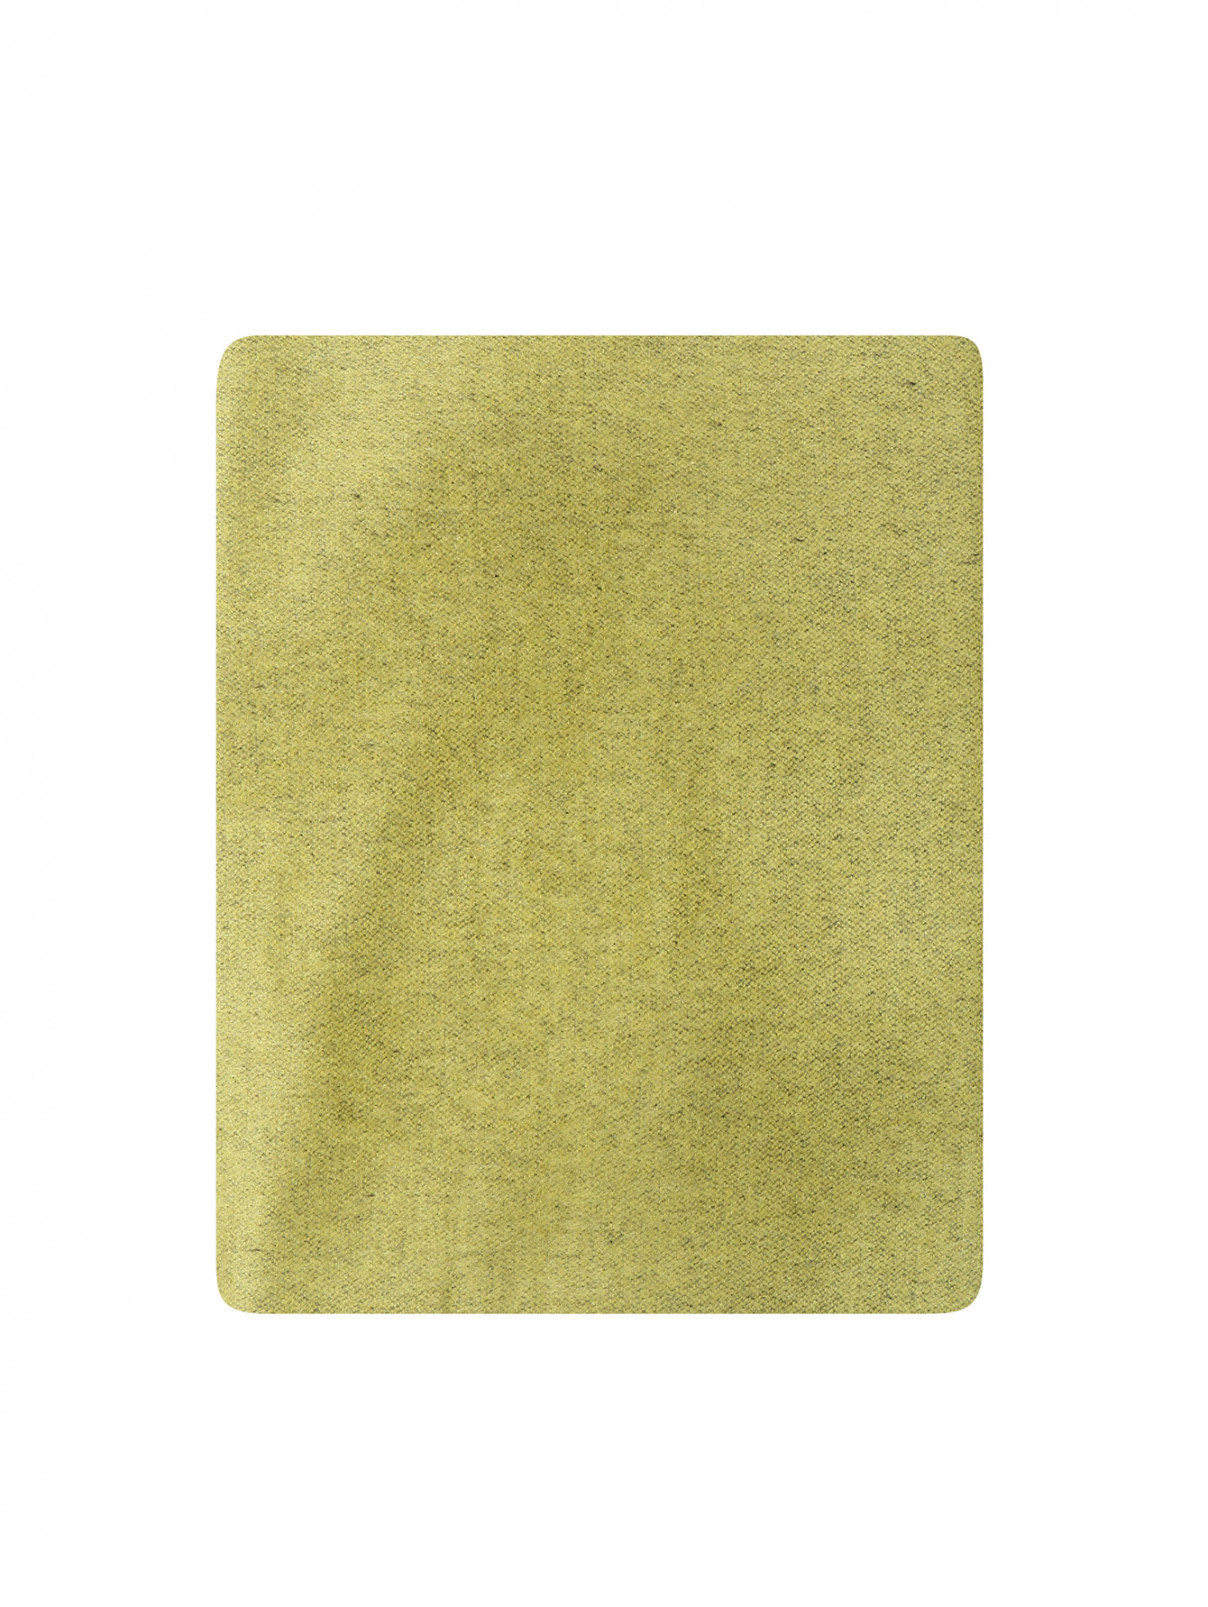 Однотонный шарф из шелка и кашемира Piacenza Cashmere  –  Общий вид  – Цвет:  Зеленый